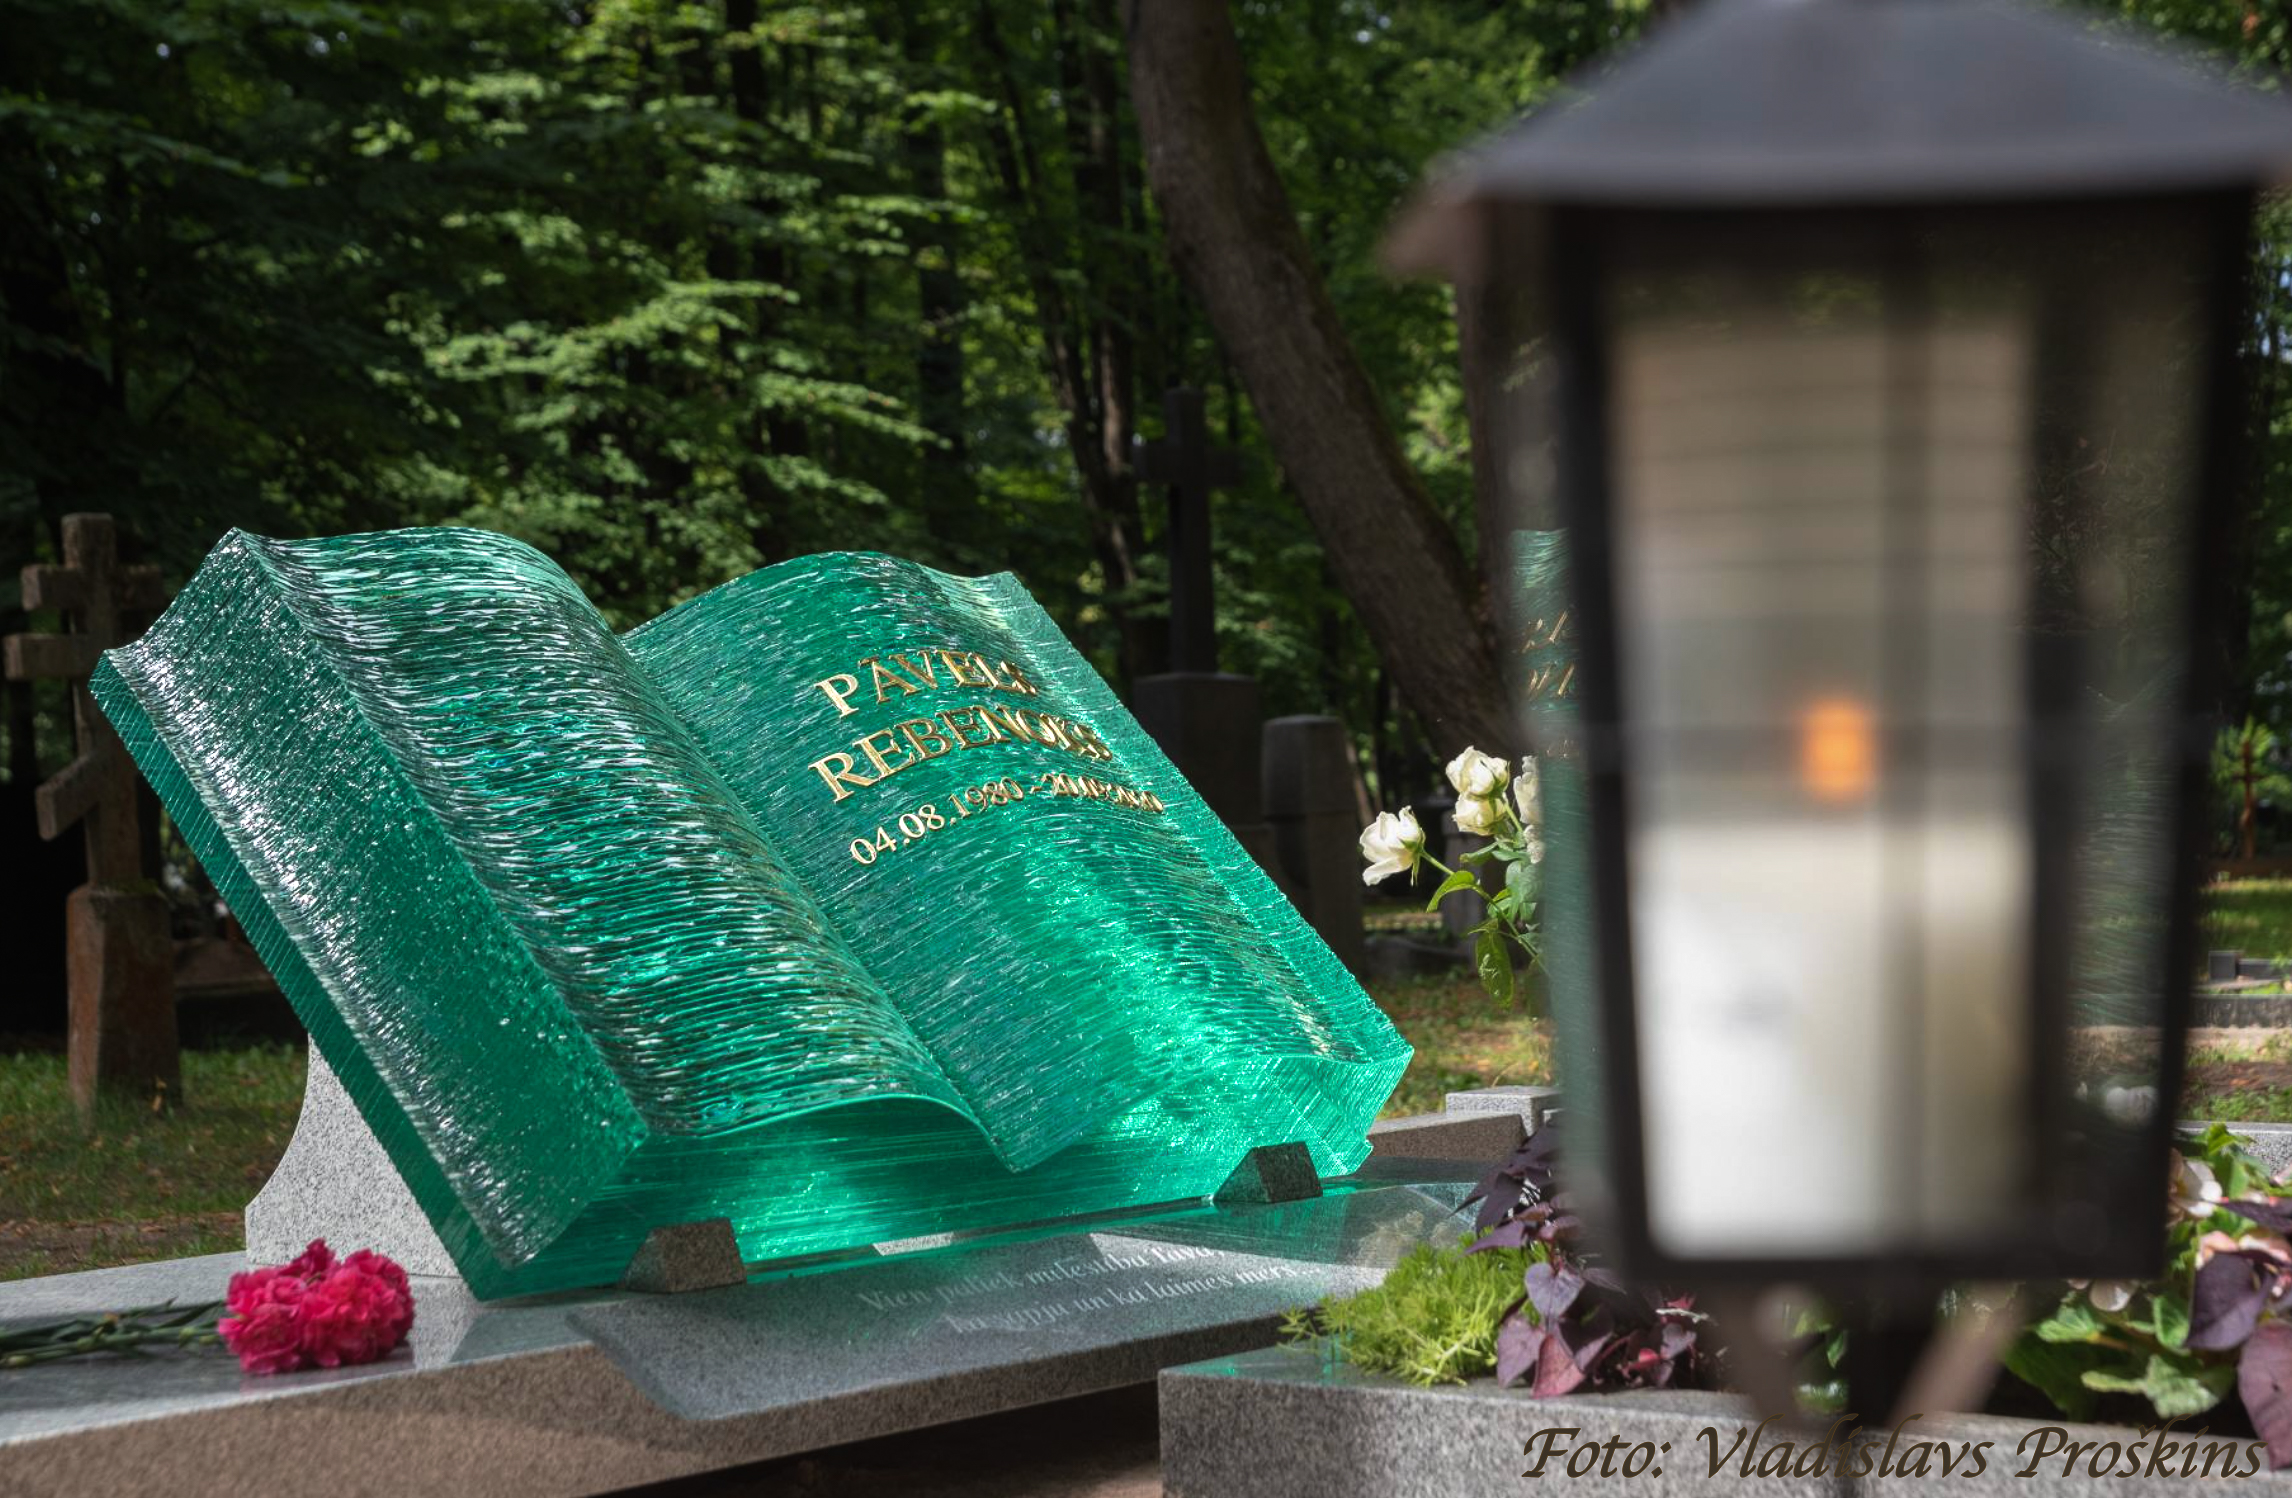 pašs kapu piemineklis grāmatas formā no stikla,kapu piemineklis grāmata,grāmatas formas kapu piemineklis,grāmatas formas kapakmens,īpašs kapa piemineklis grāmatas formā no stikla